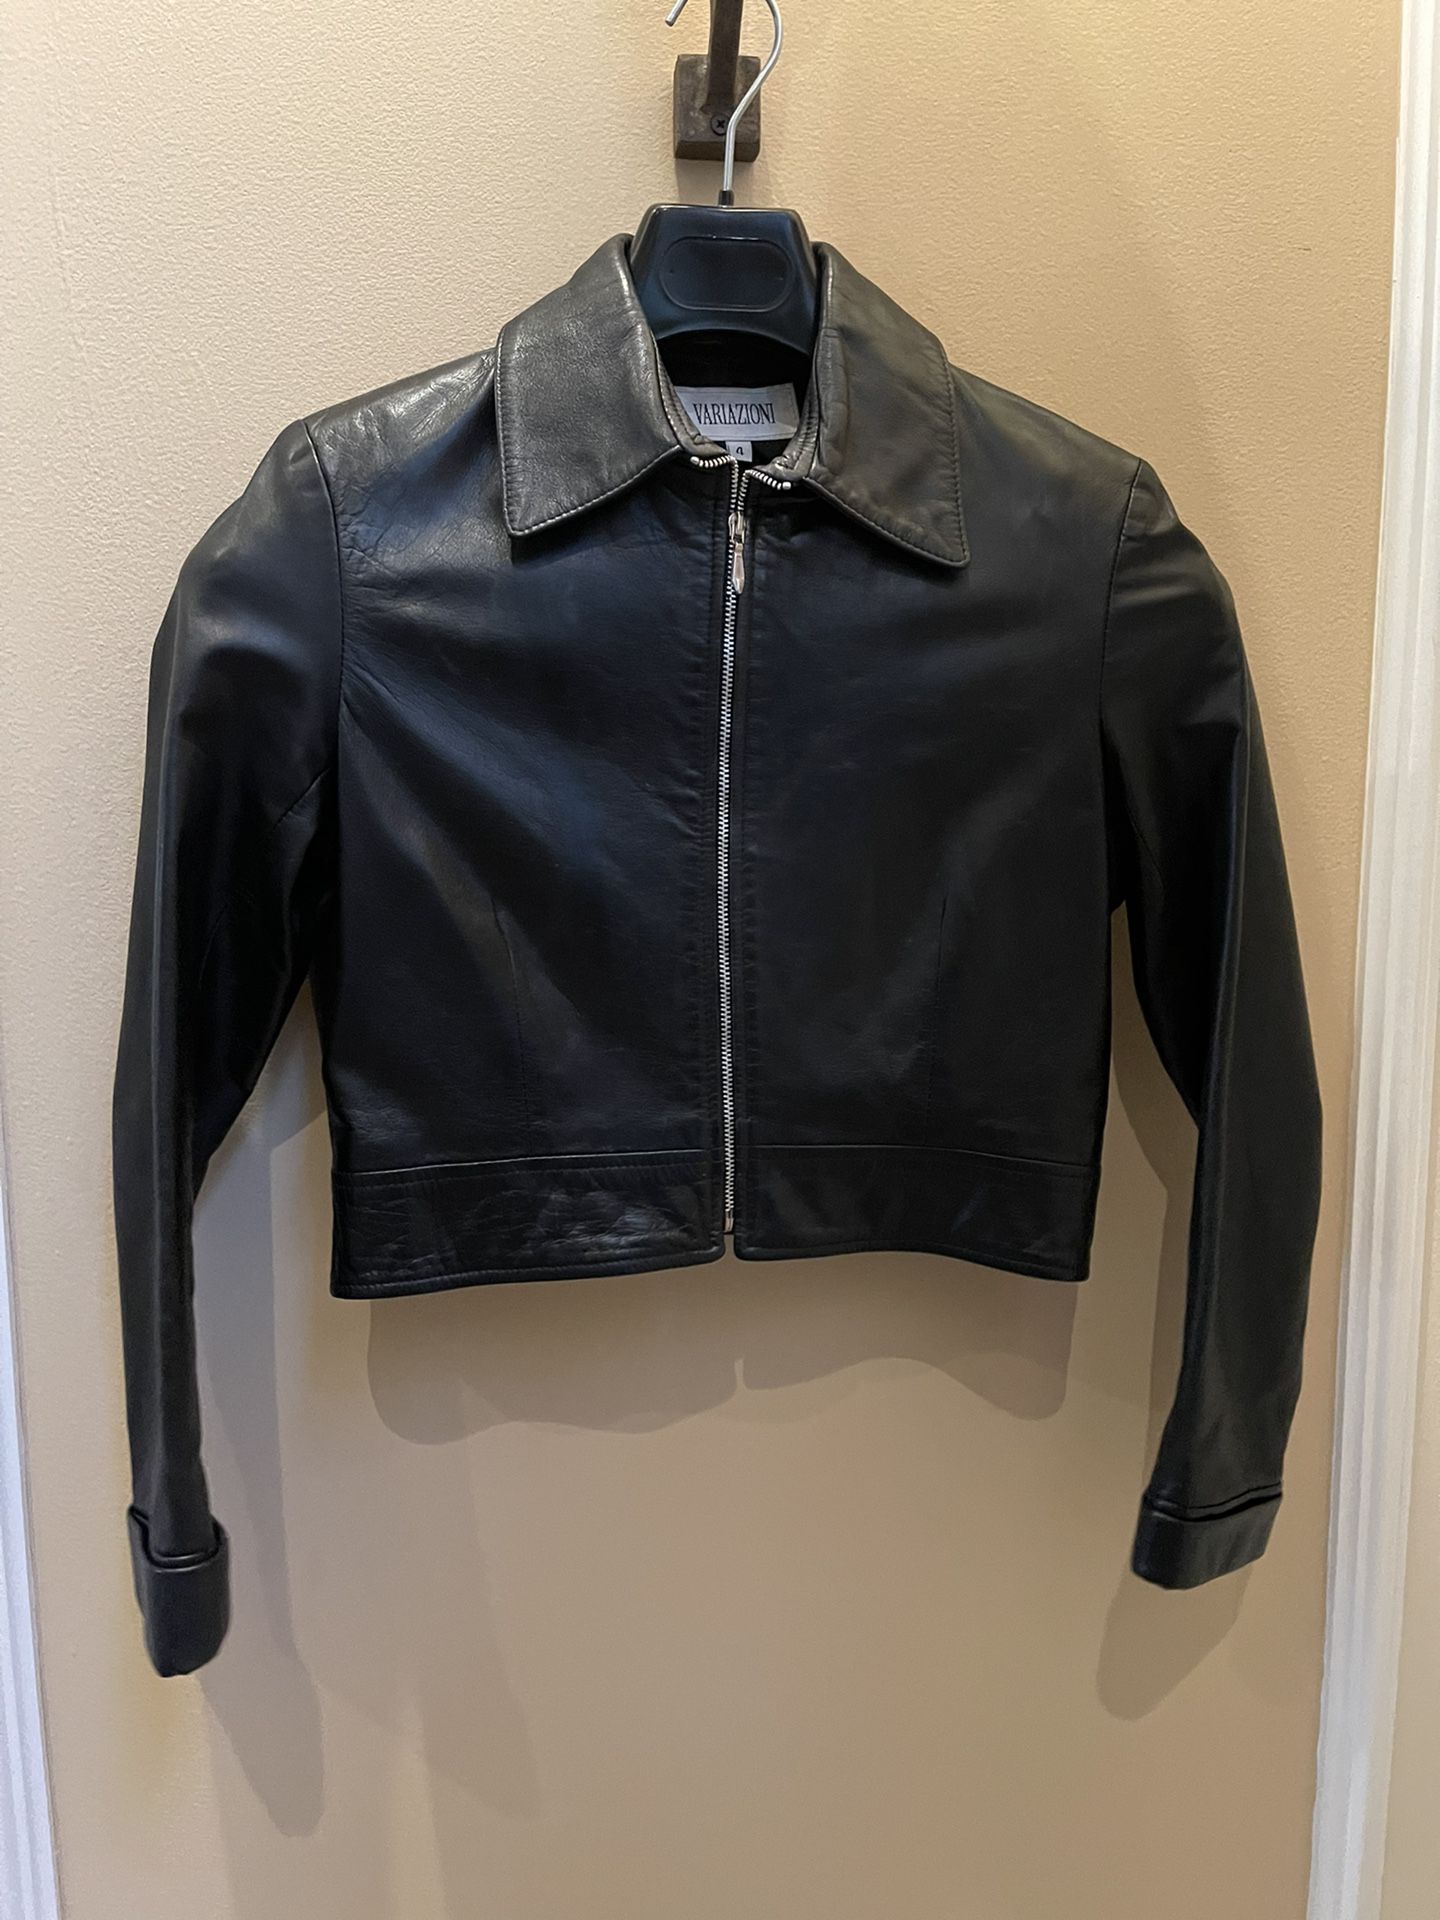 Black Leather Jacket  Size 4  